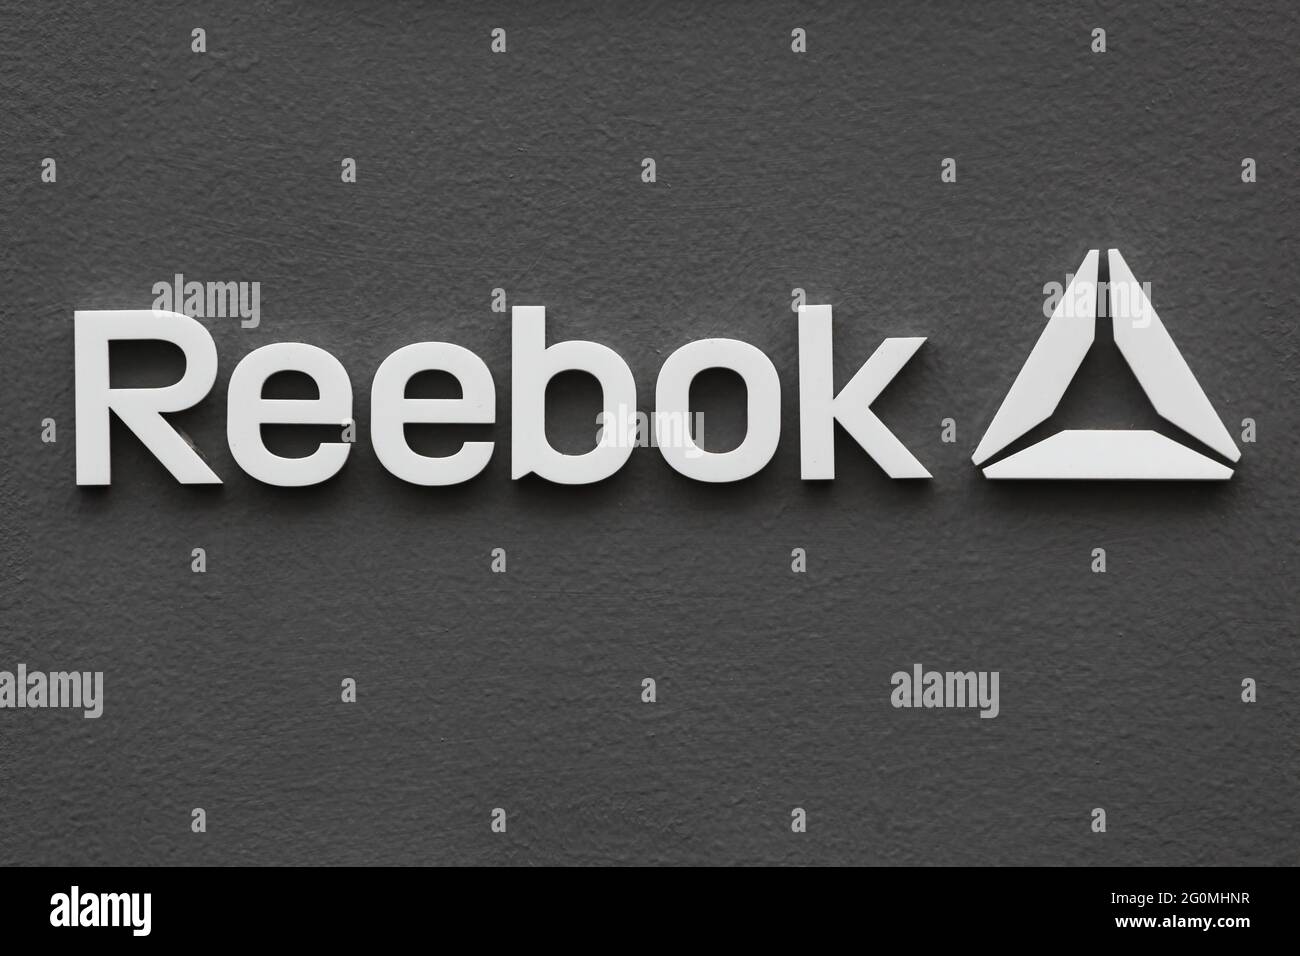 Modsigelse Øst Timor ulæselig Reebok logo hi-res stock photography and images - Alamy